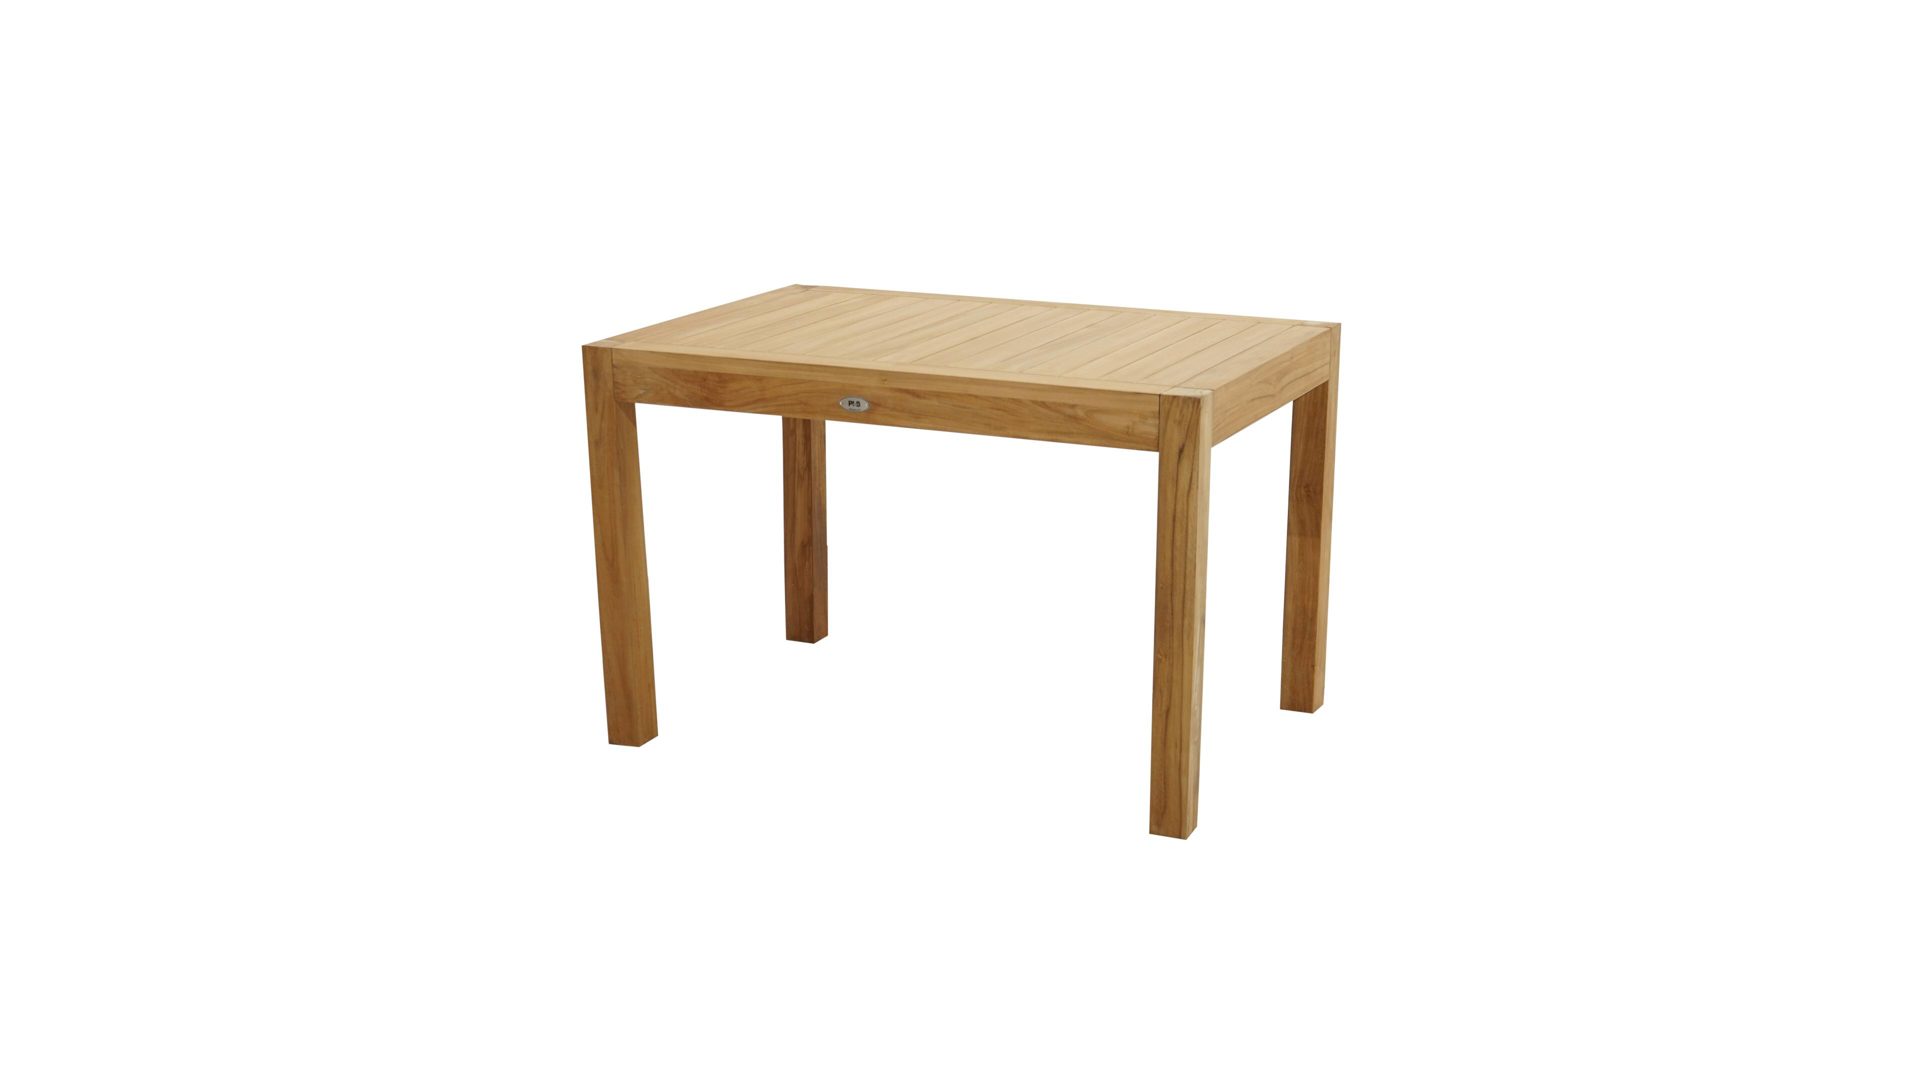 Gartentisch Ploß aus Holz in Holzfarben Ploß® Loft-Tisch New Haven als Gartenmöbel Teakholz – ca. 120 x 80 cm